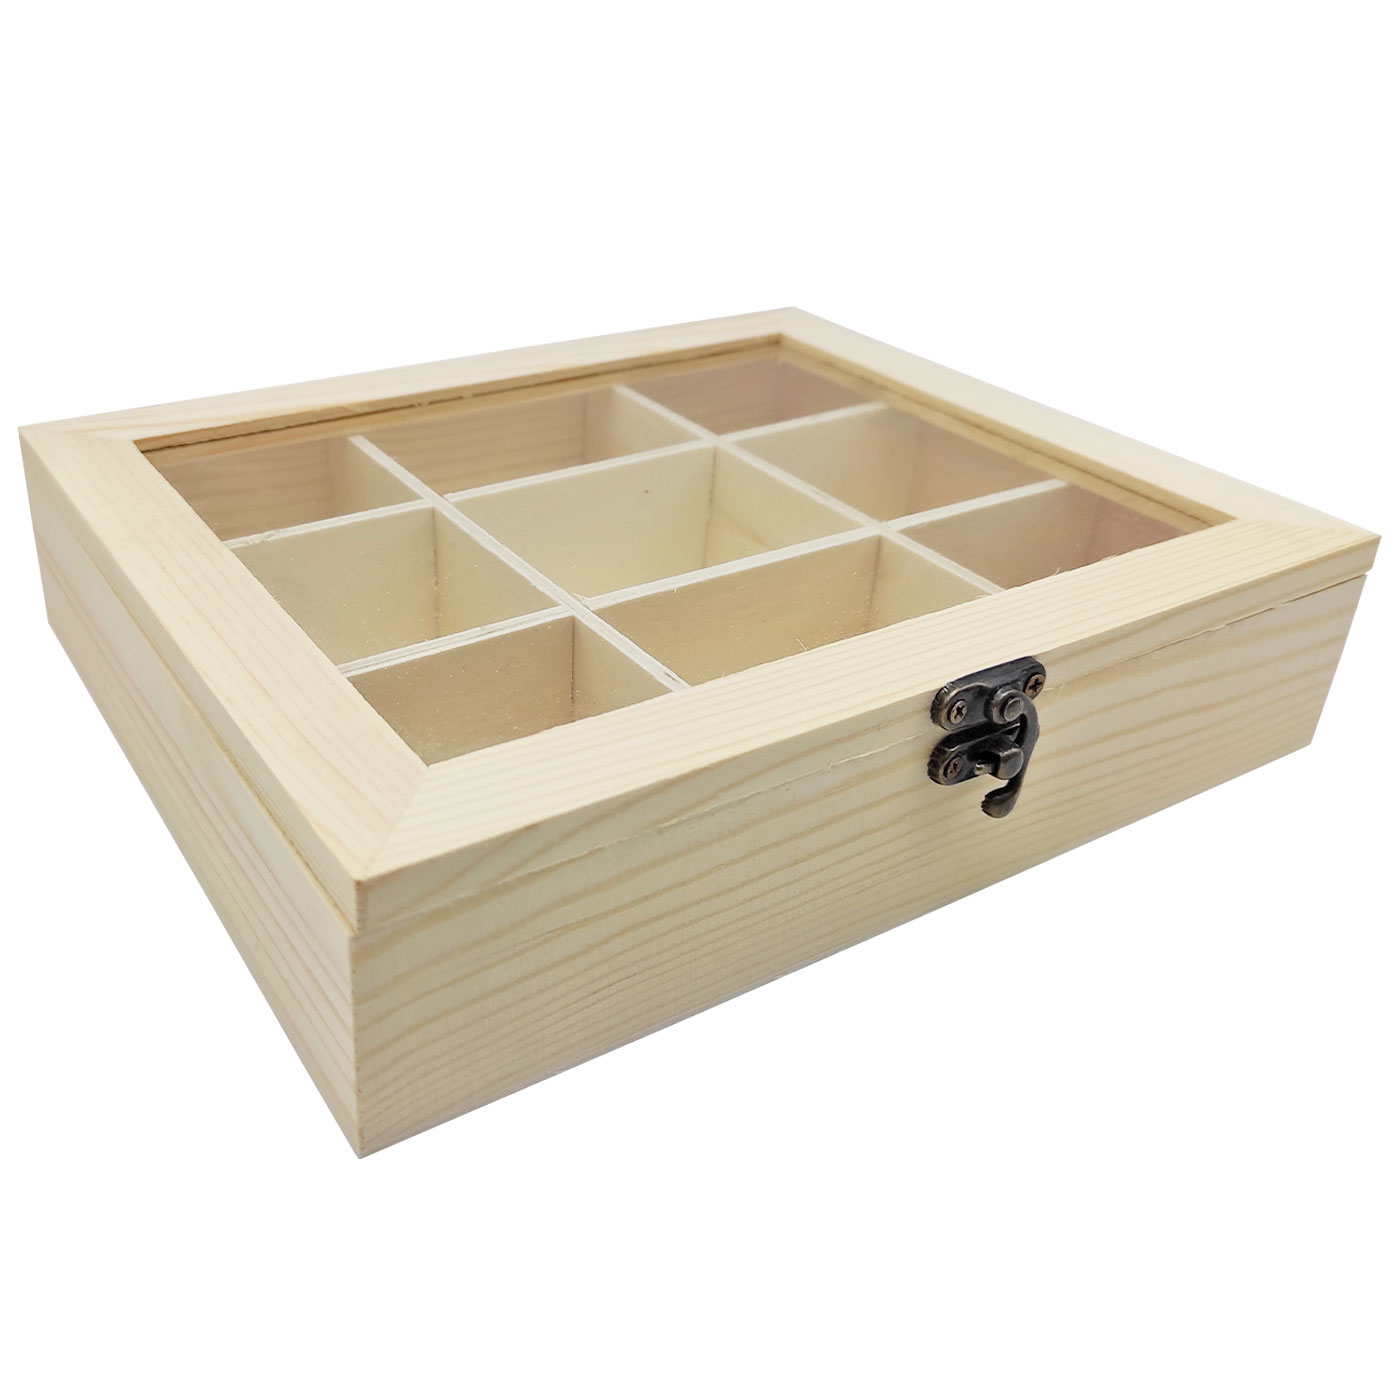 Tradineur - Caja de madera...